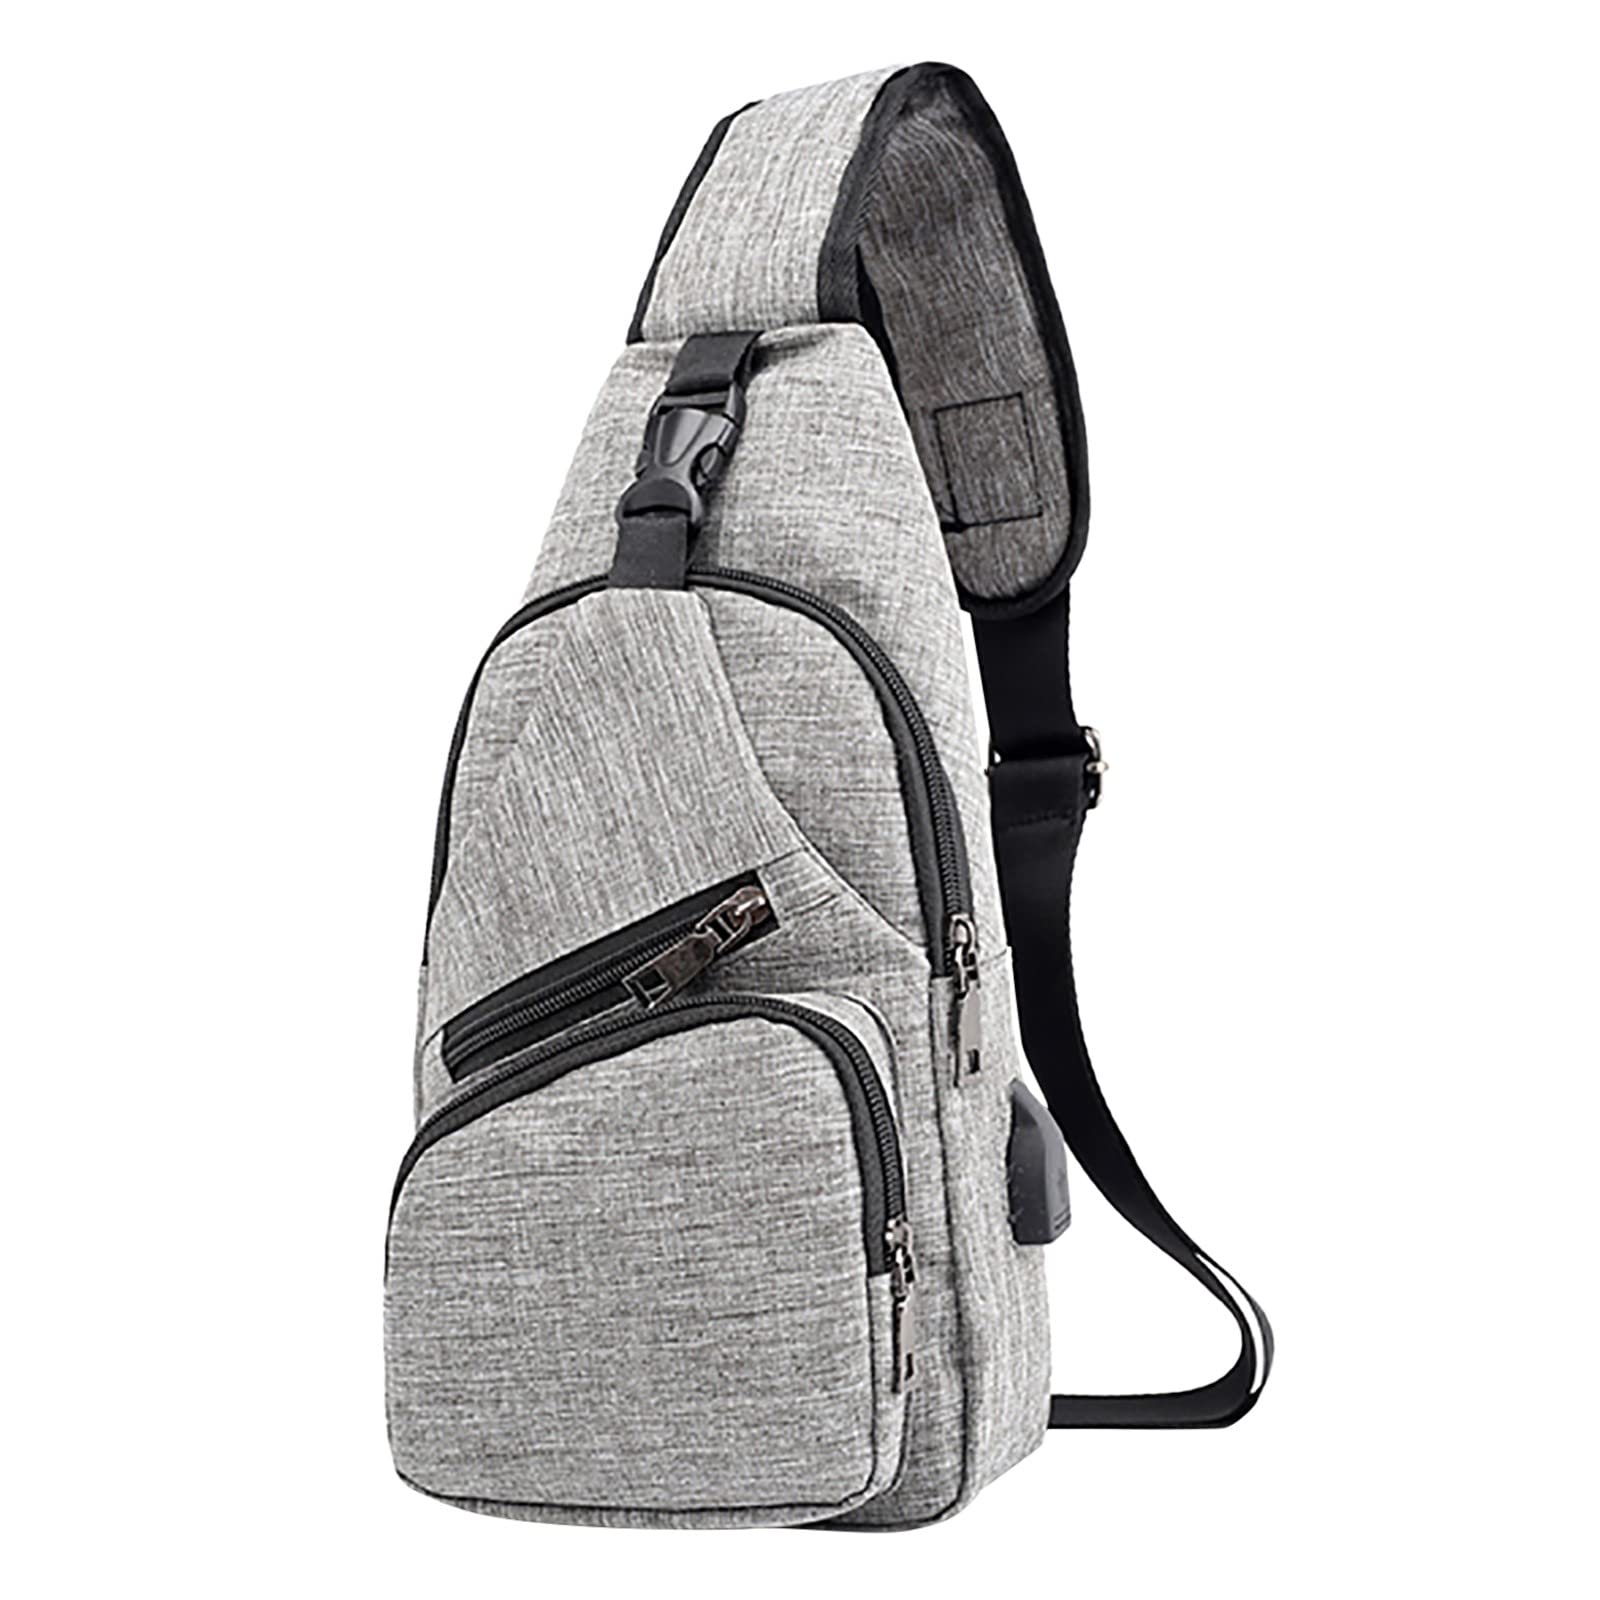 送料無料WMQPNNS Sling Bag For Men Women Shoulder Backpack Chest Bags Crossbody Daypack With USB Cable For Hiking Camping